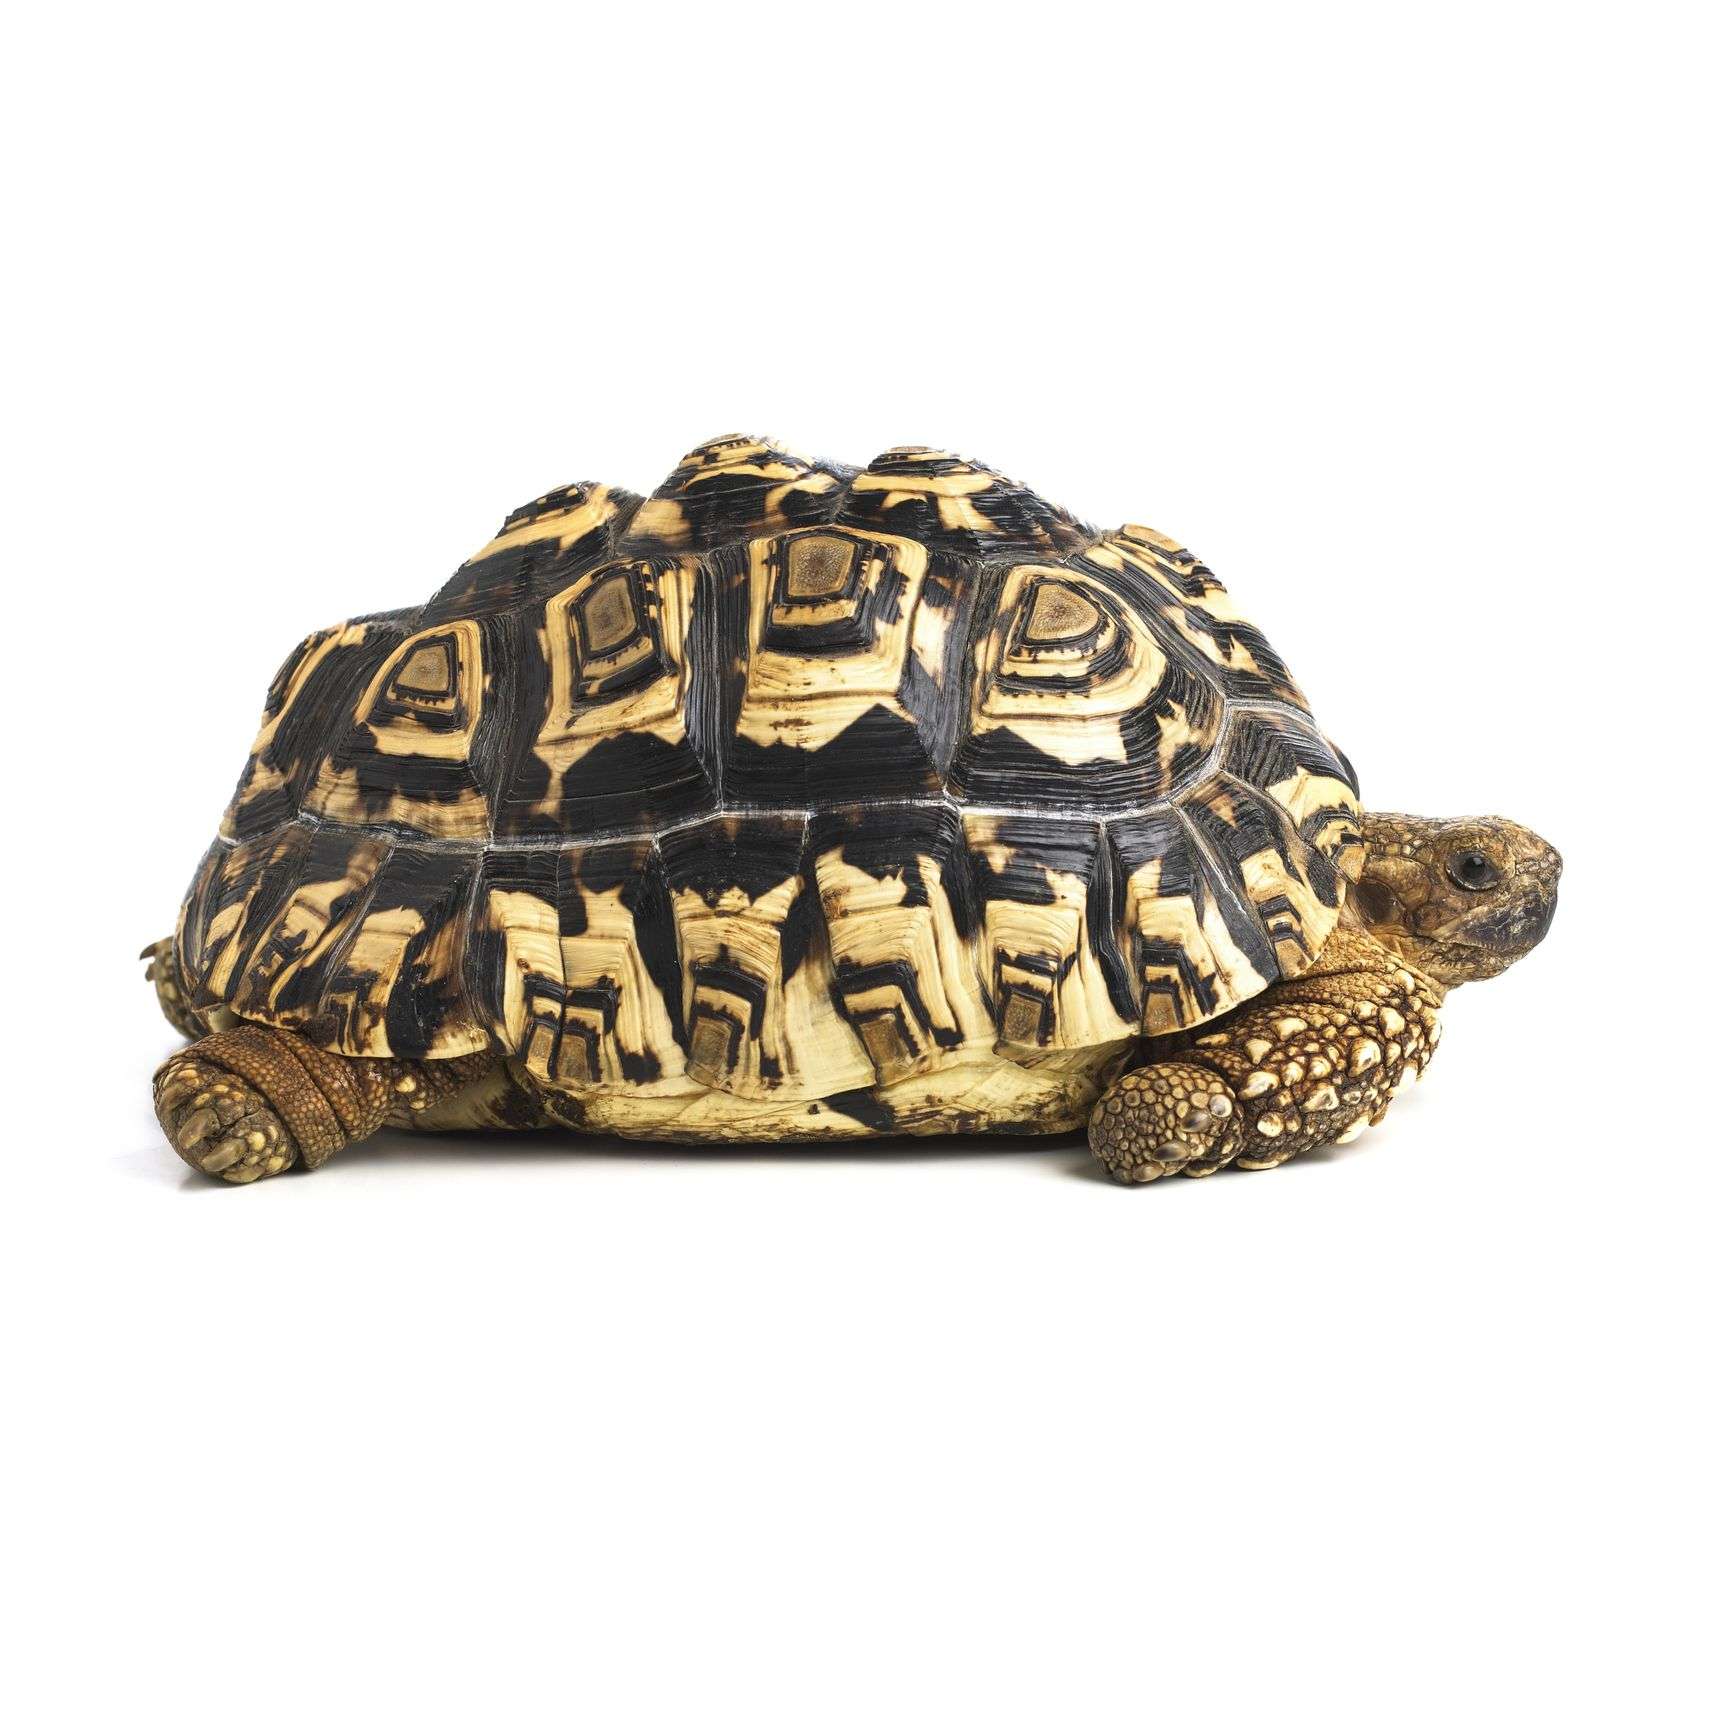 leopard-tortoise.